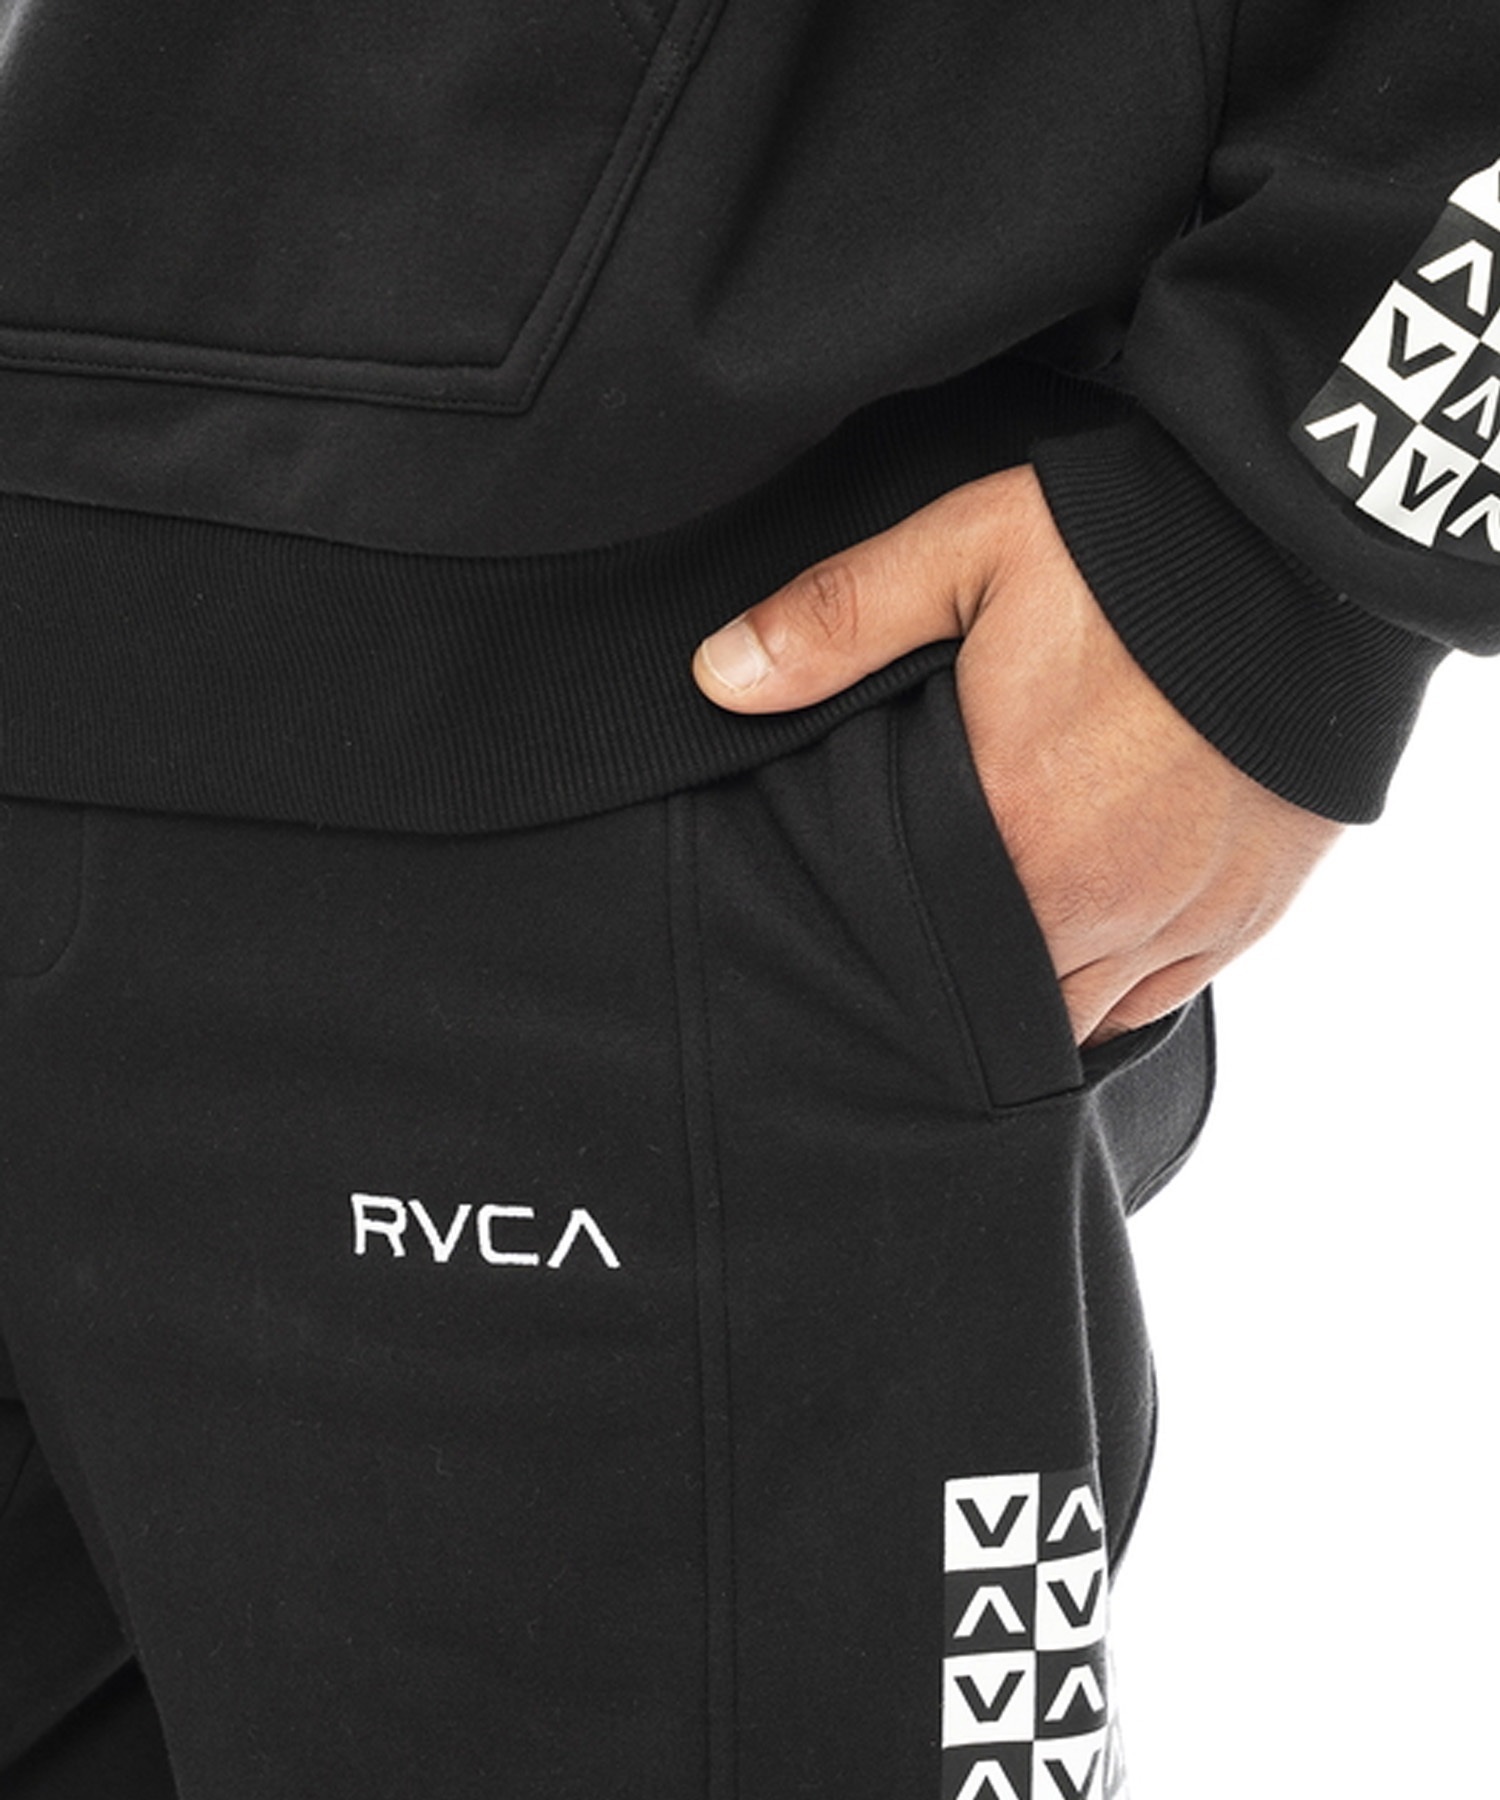 RVCA/ルーカ CHECKER SWEAT PANTS メンズ スウェットパンツ チェッカーフラッグ柄 市松模様 防風 撥水 セットアップ対応 BD042-747(WHT-S)